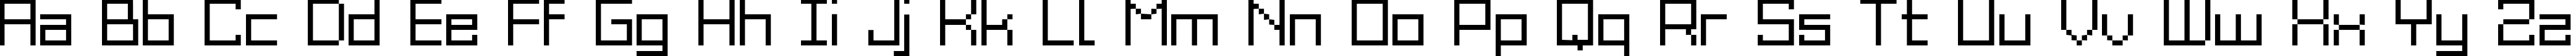 Пример написания английского алфавита шрифтом Grixel Acme 9 Regular